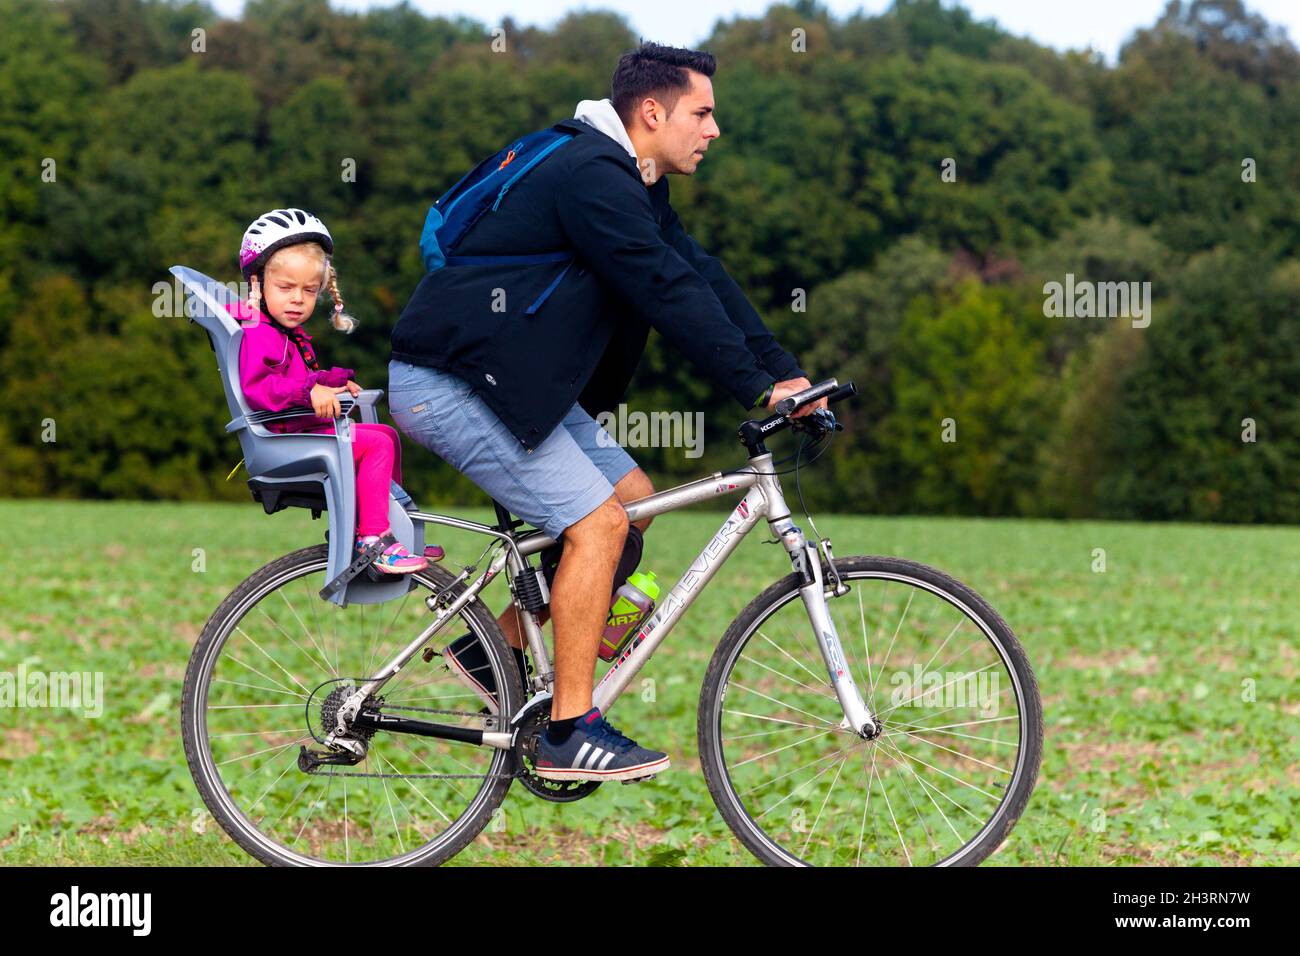 Ein kleines Mädchen im Kindersitz, ein Mann auf dem Fahrrad, ein Kind auf dem Fahrradsitz, ein Kleinkindhelm Stockfoto